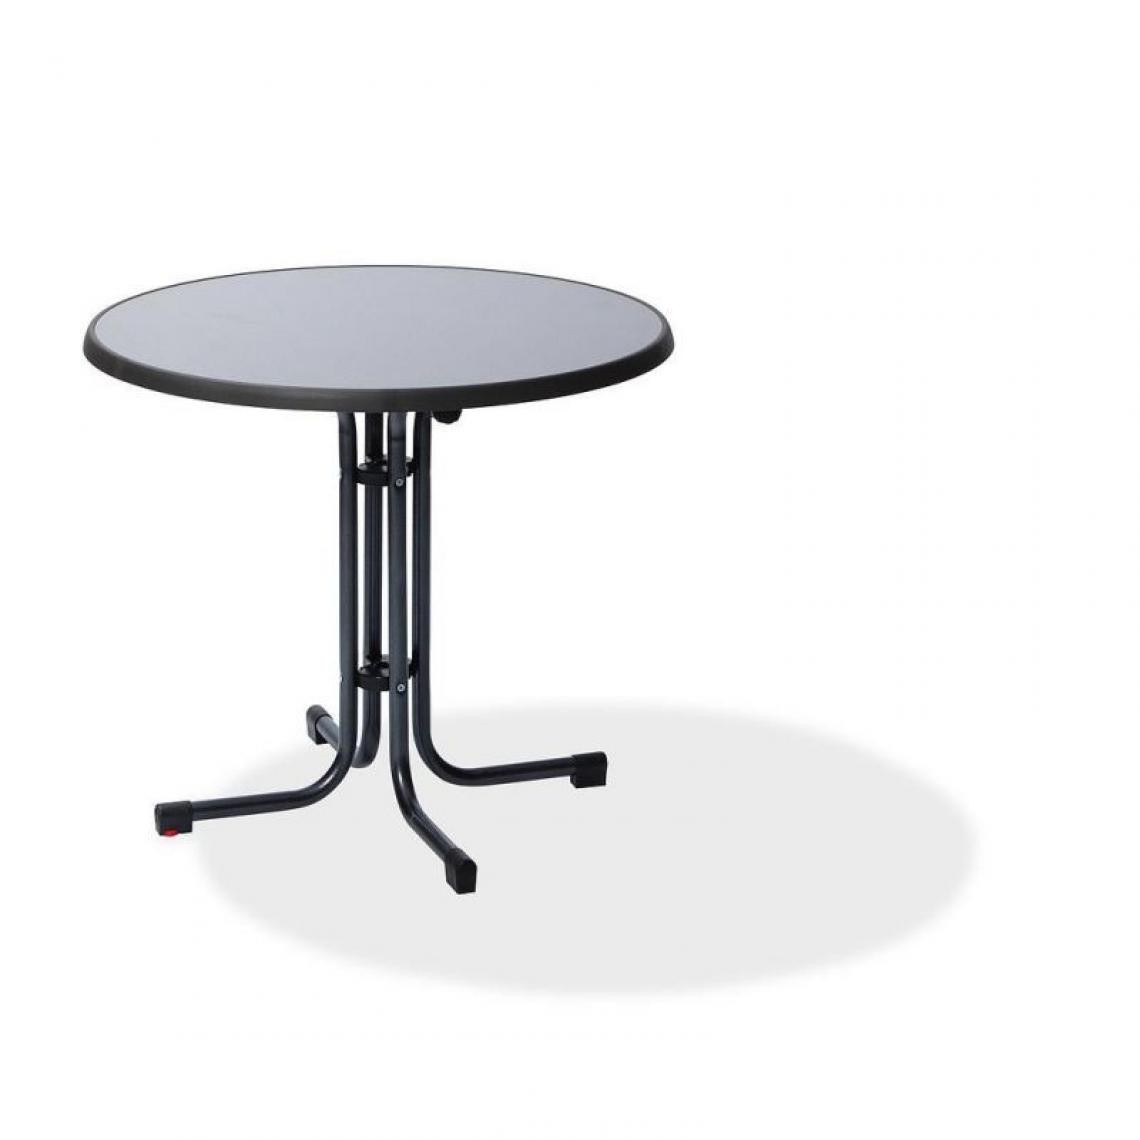 Materiel Chr Pro - Table de Bistro Berlin Ø 80 cm - Veba - Anthracite - Tables à manger